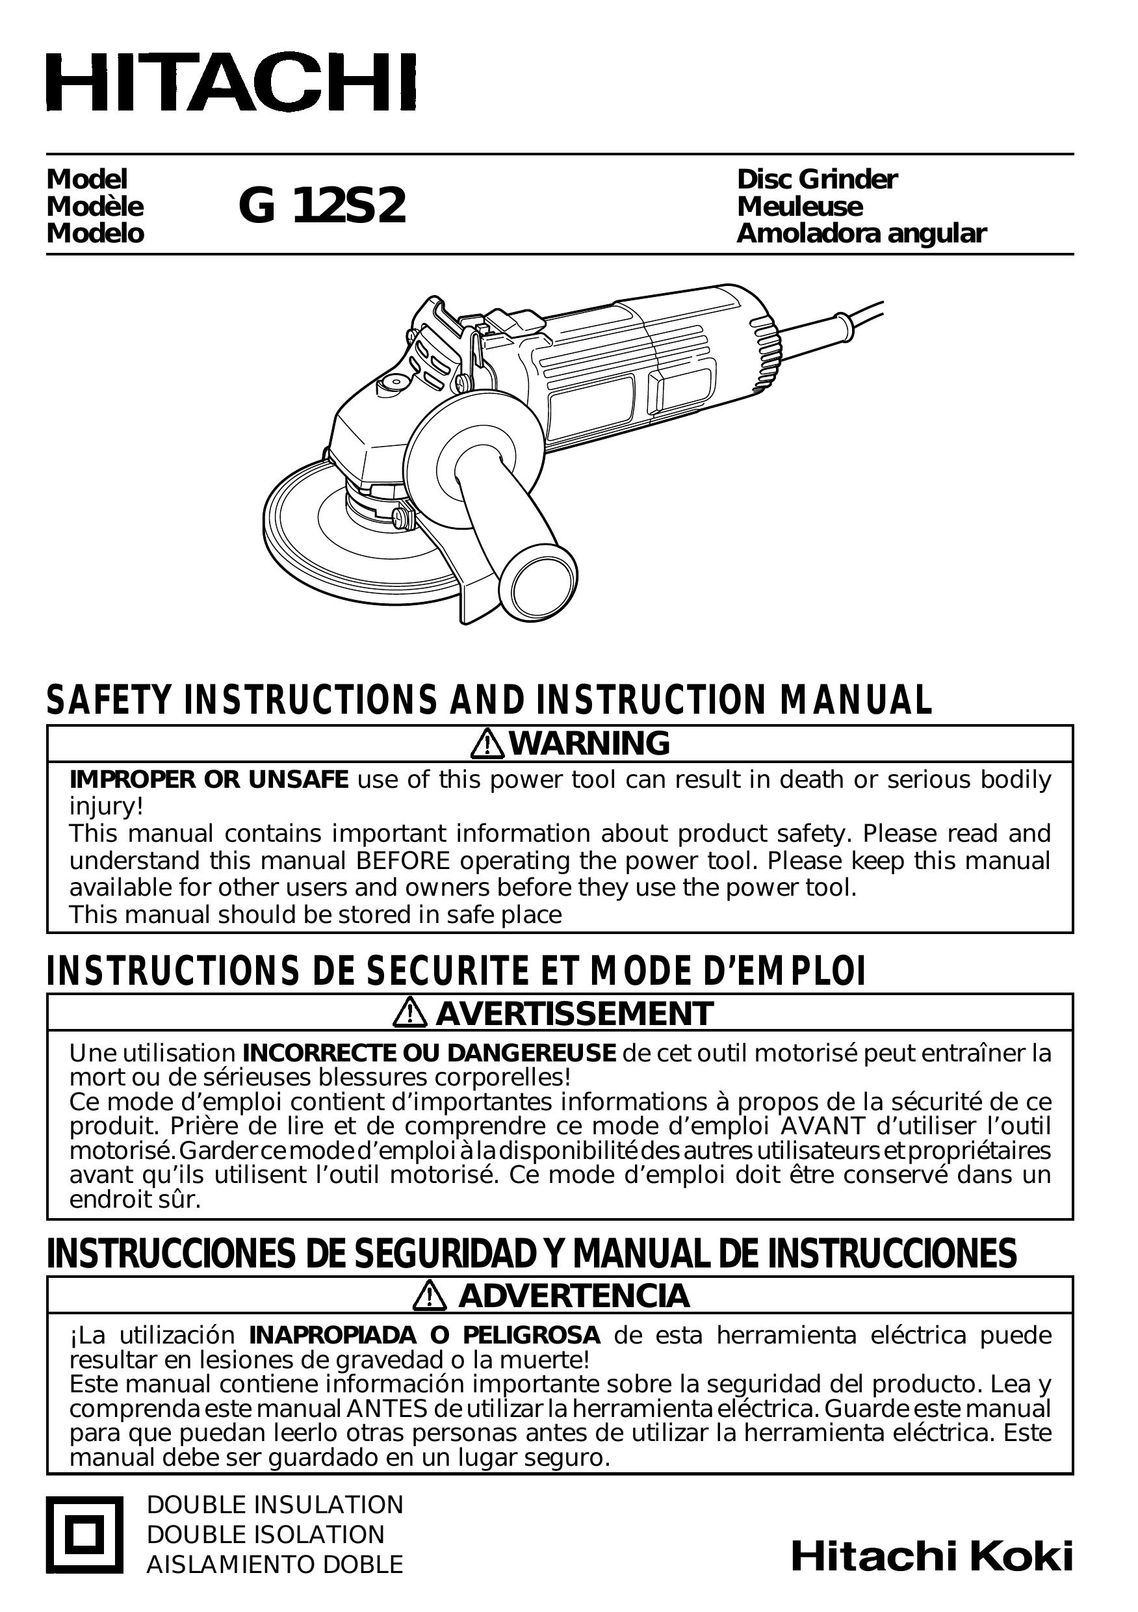 Hitachi G 12S2 Grinder User Manual